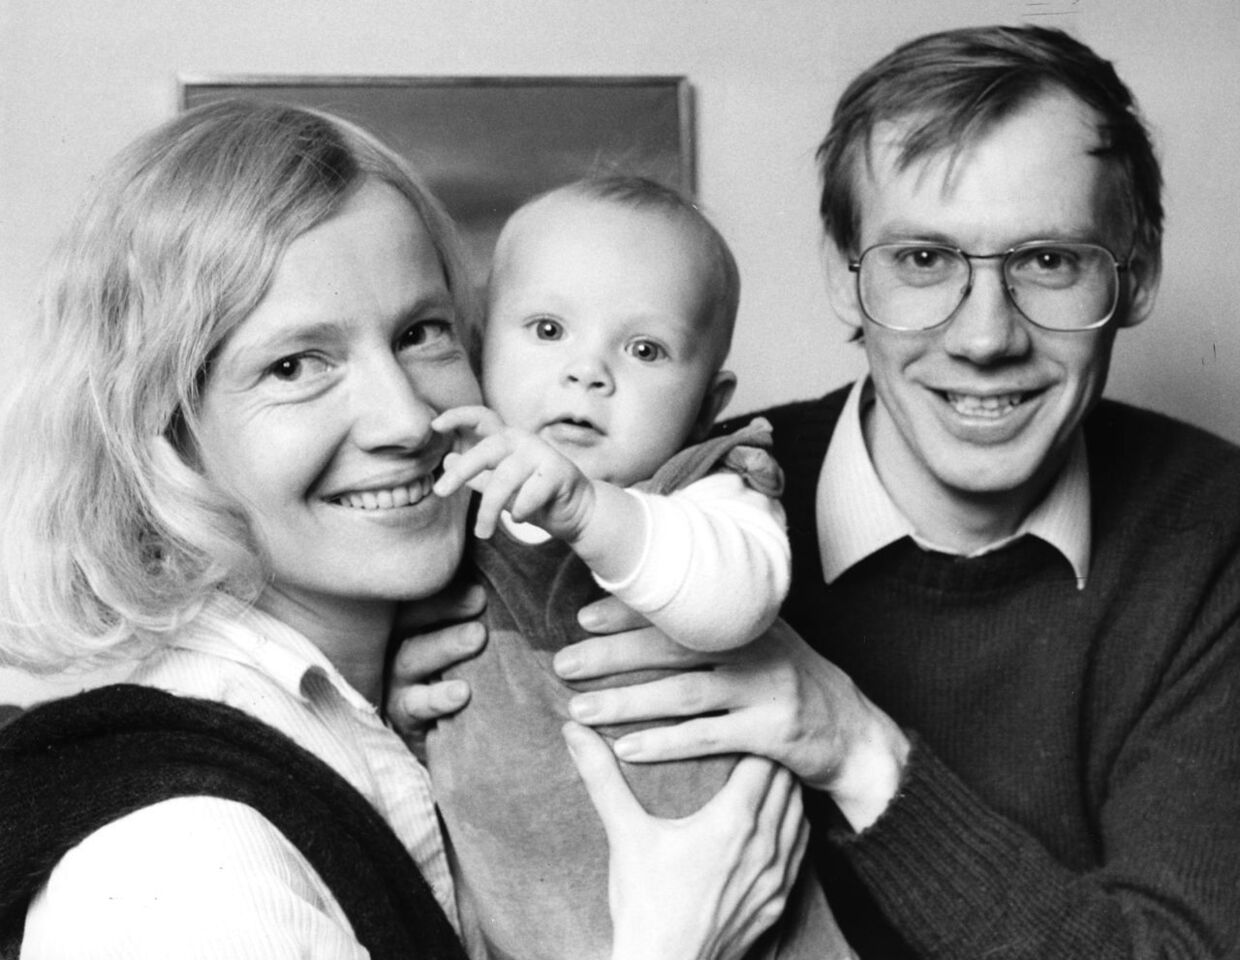 Nils Malmros med sin kone Marianne Tromholt og deres lille pige Anne, der kun blev 9 måneder gammel. Arkivfoto: Erik Jepsen/Scanpix